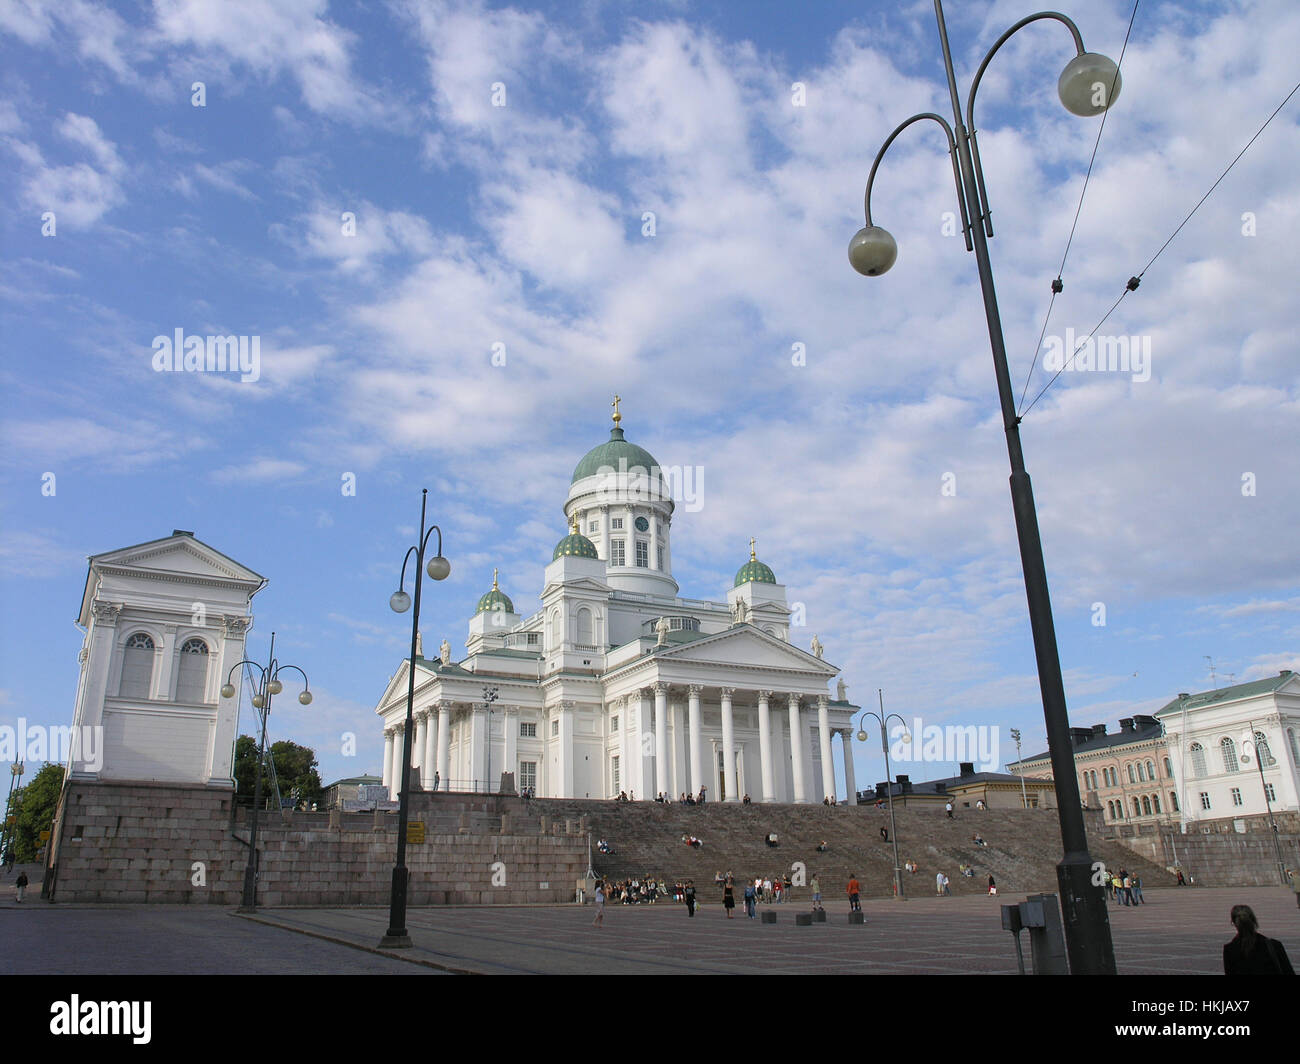 Luterana Tuomiokirkko kathedral Plaza del Senado y el centro de Helsinki, Finlandia Foto de stock